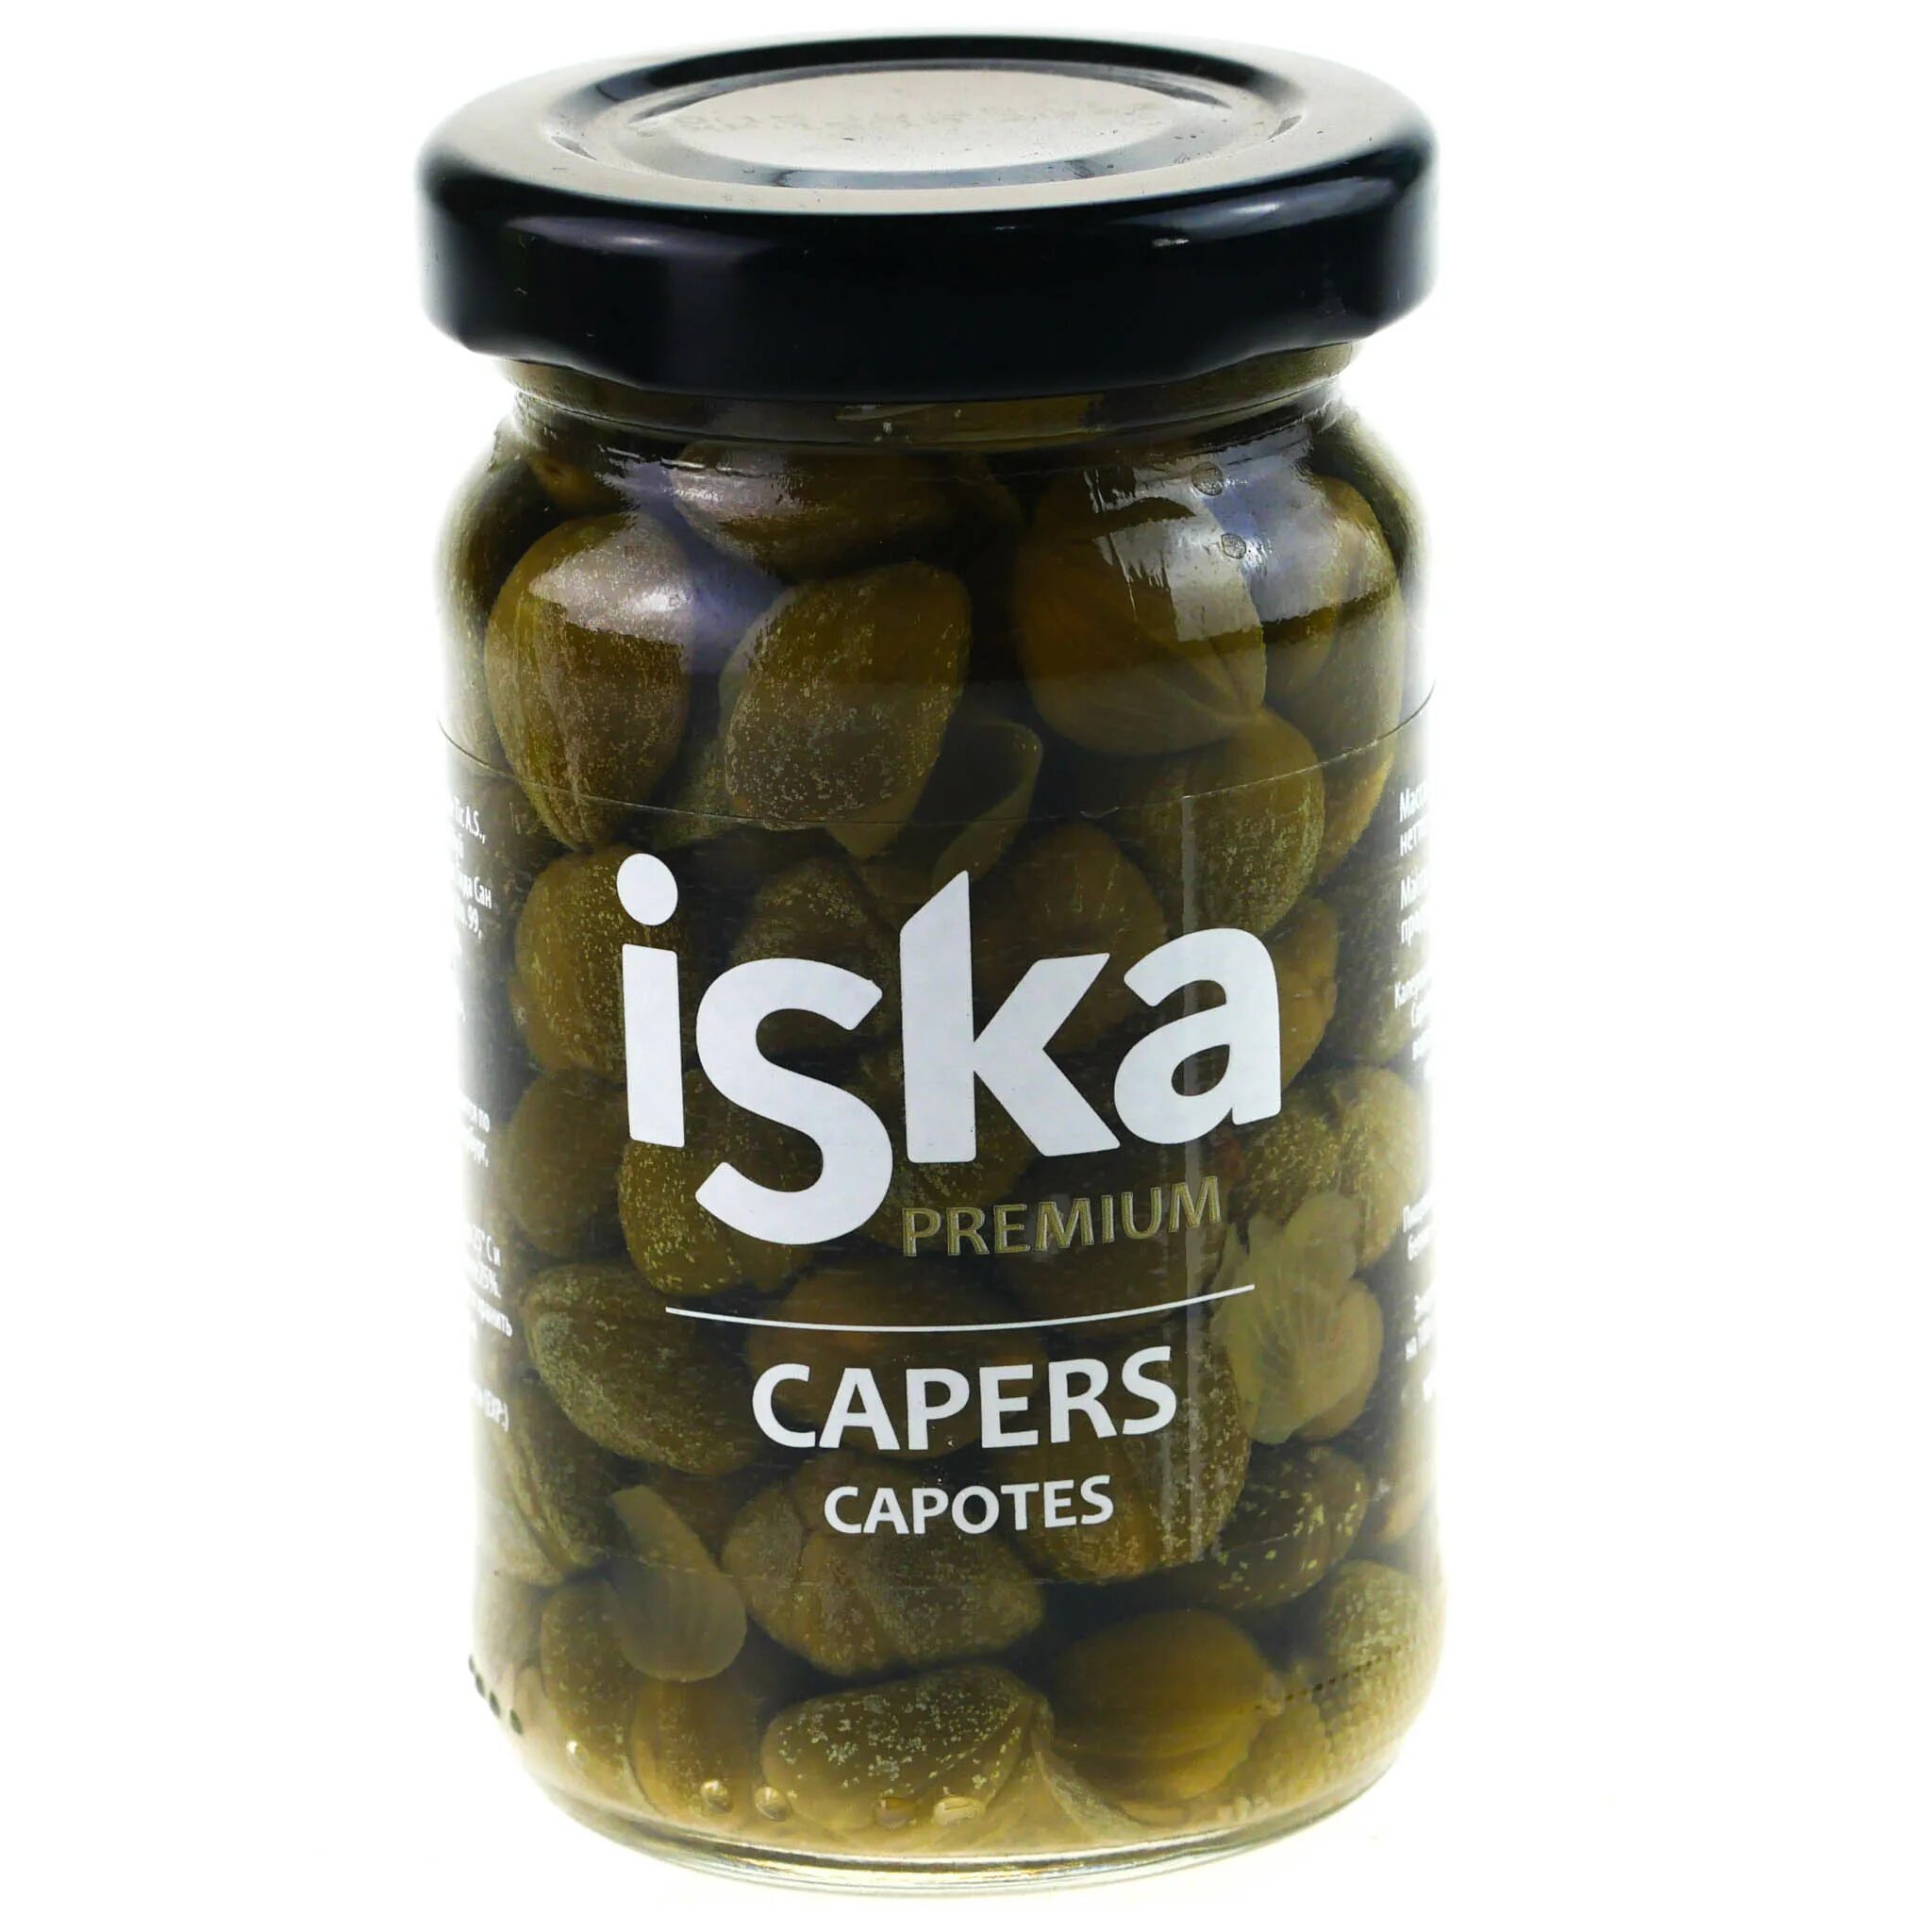 Каперсы iska 100г. Каперсы Premium iska 100 г. Каперсы консервированные «iska», 106мл. Каперсы консервы.